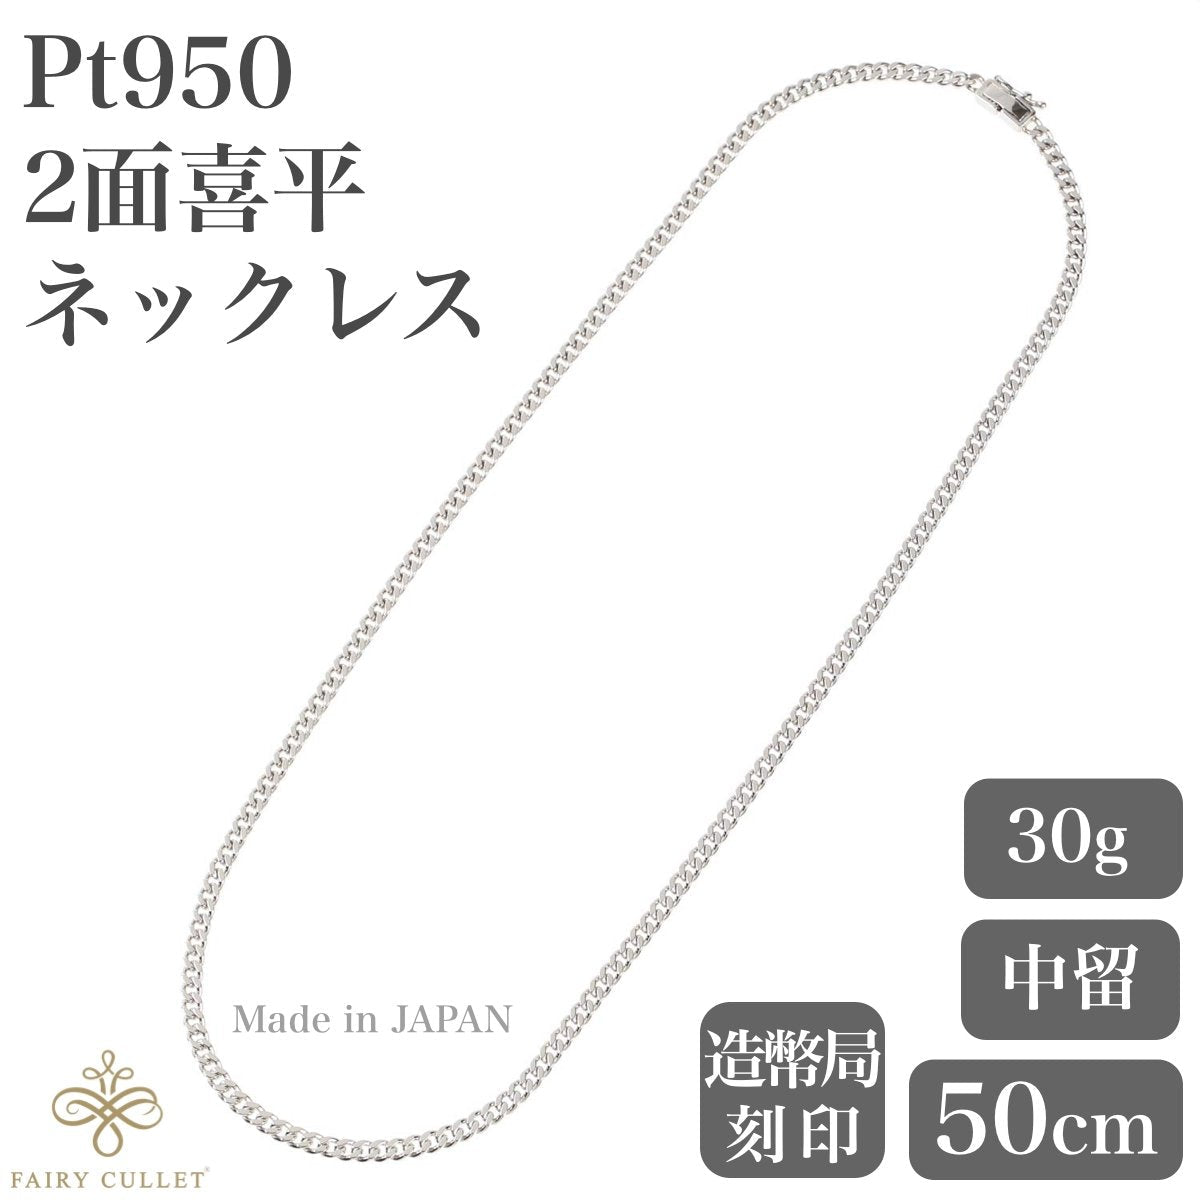 プラチナネックレス Pt950 2面喜平チェーン 日本製 検定印 30g 50cm 中 